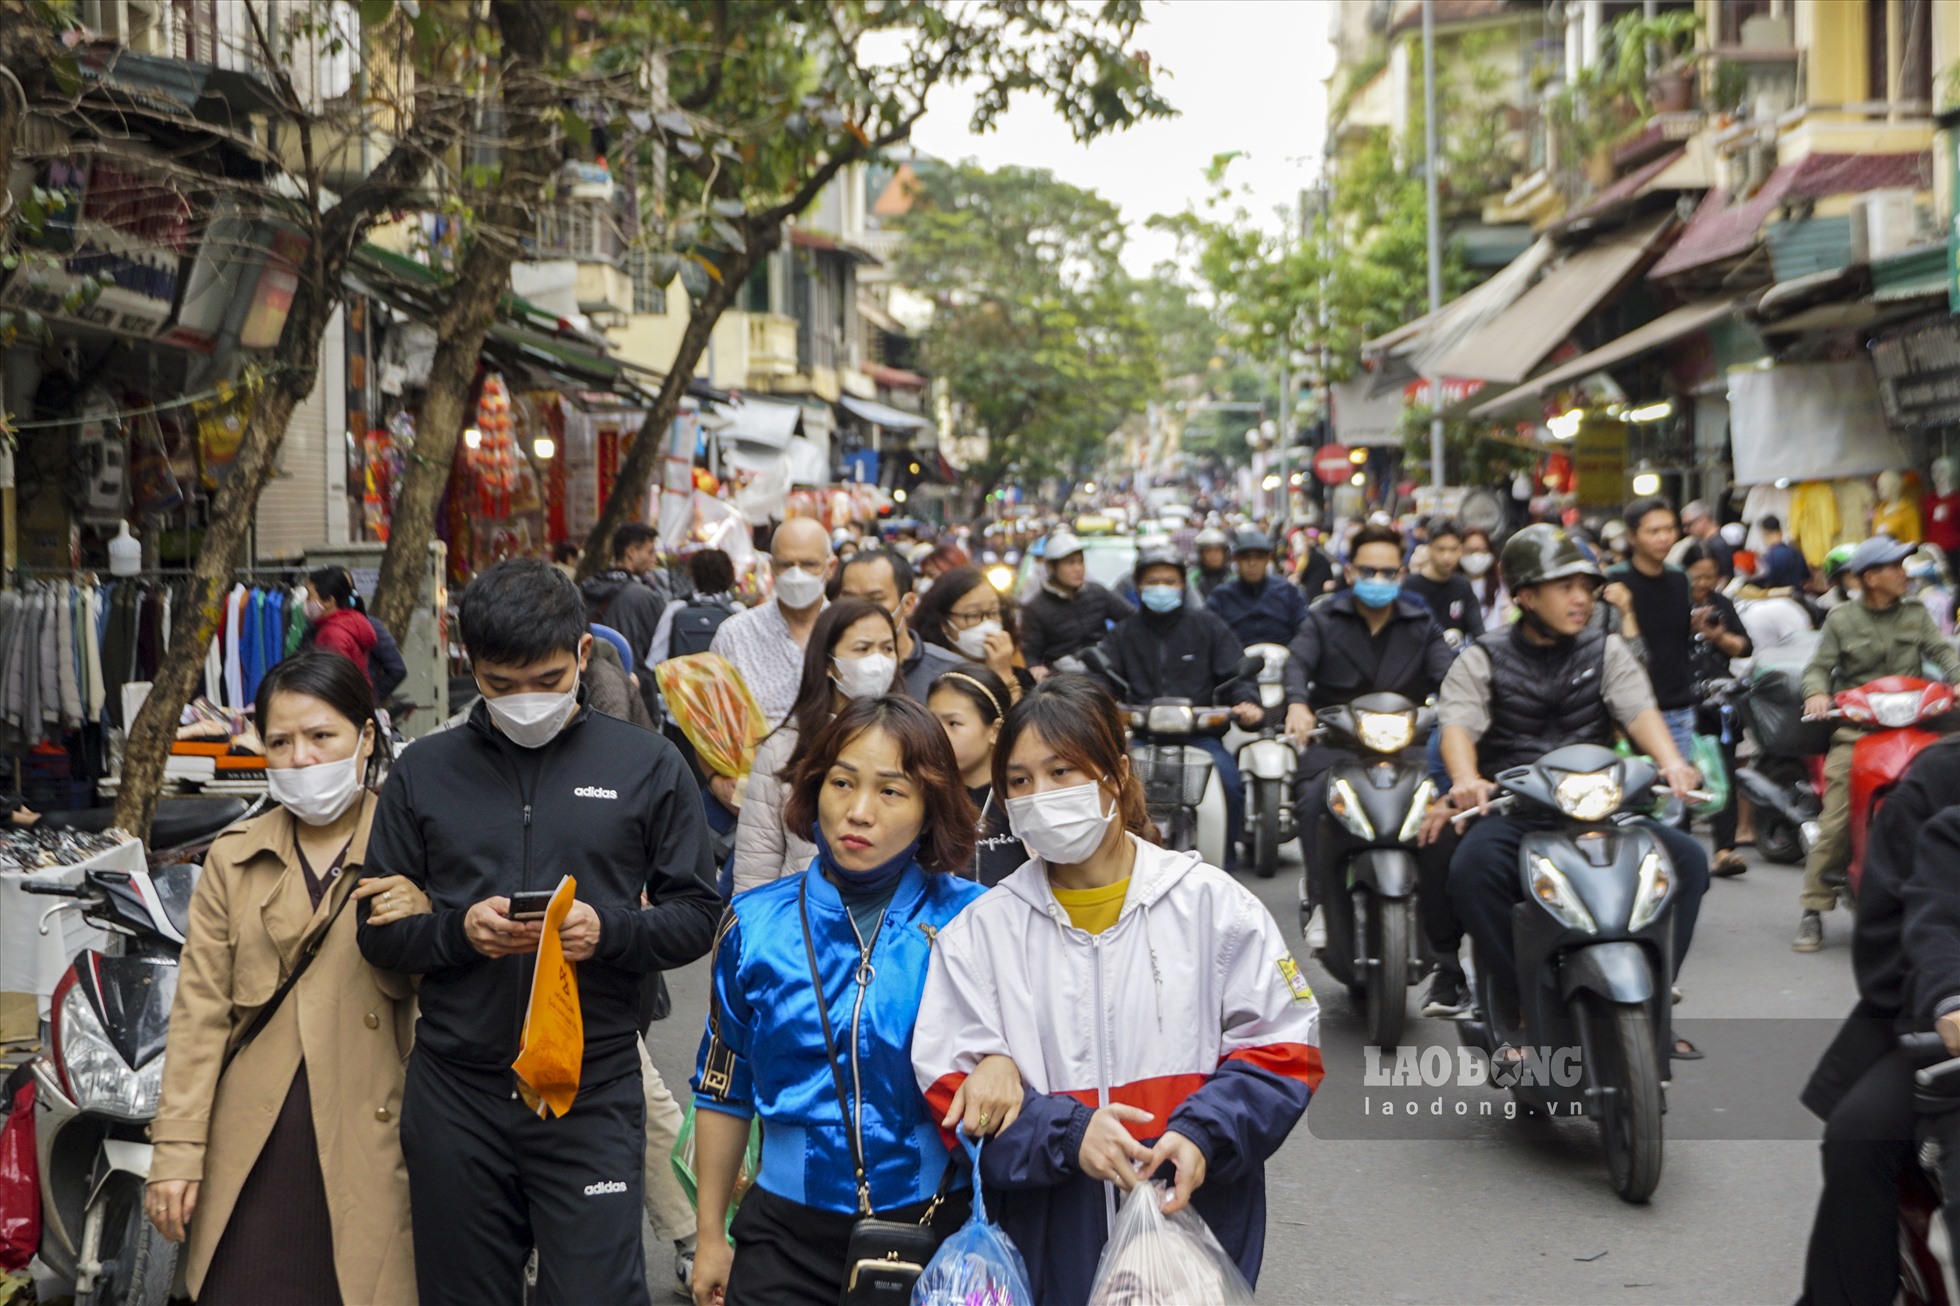 Chiều 15.1, theo ghi nhận của Lao Động, trên các tuyến phố thuộc trung tâm Hà Nội mật độ phương tiện giao thông đông đúc. Người dân chủ yếu đi du xuân, mua sắm chuẩn bị cho kỳ nghỉ Tết cận kề.